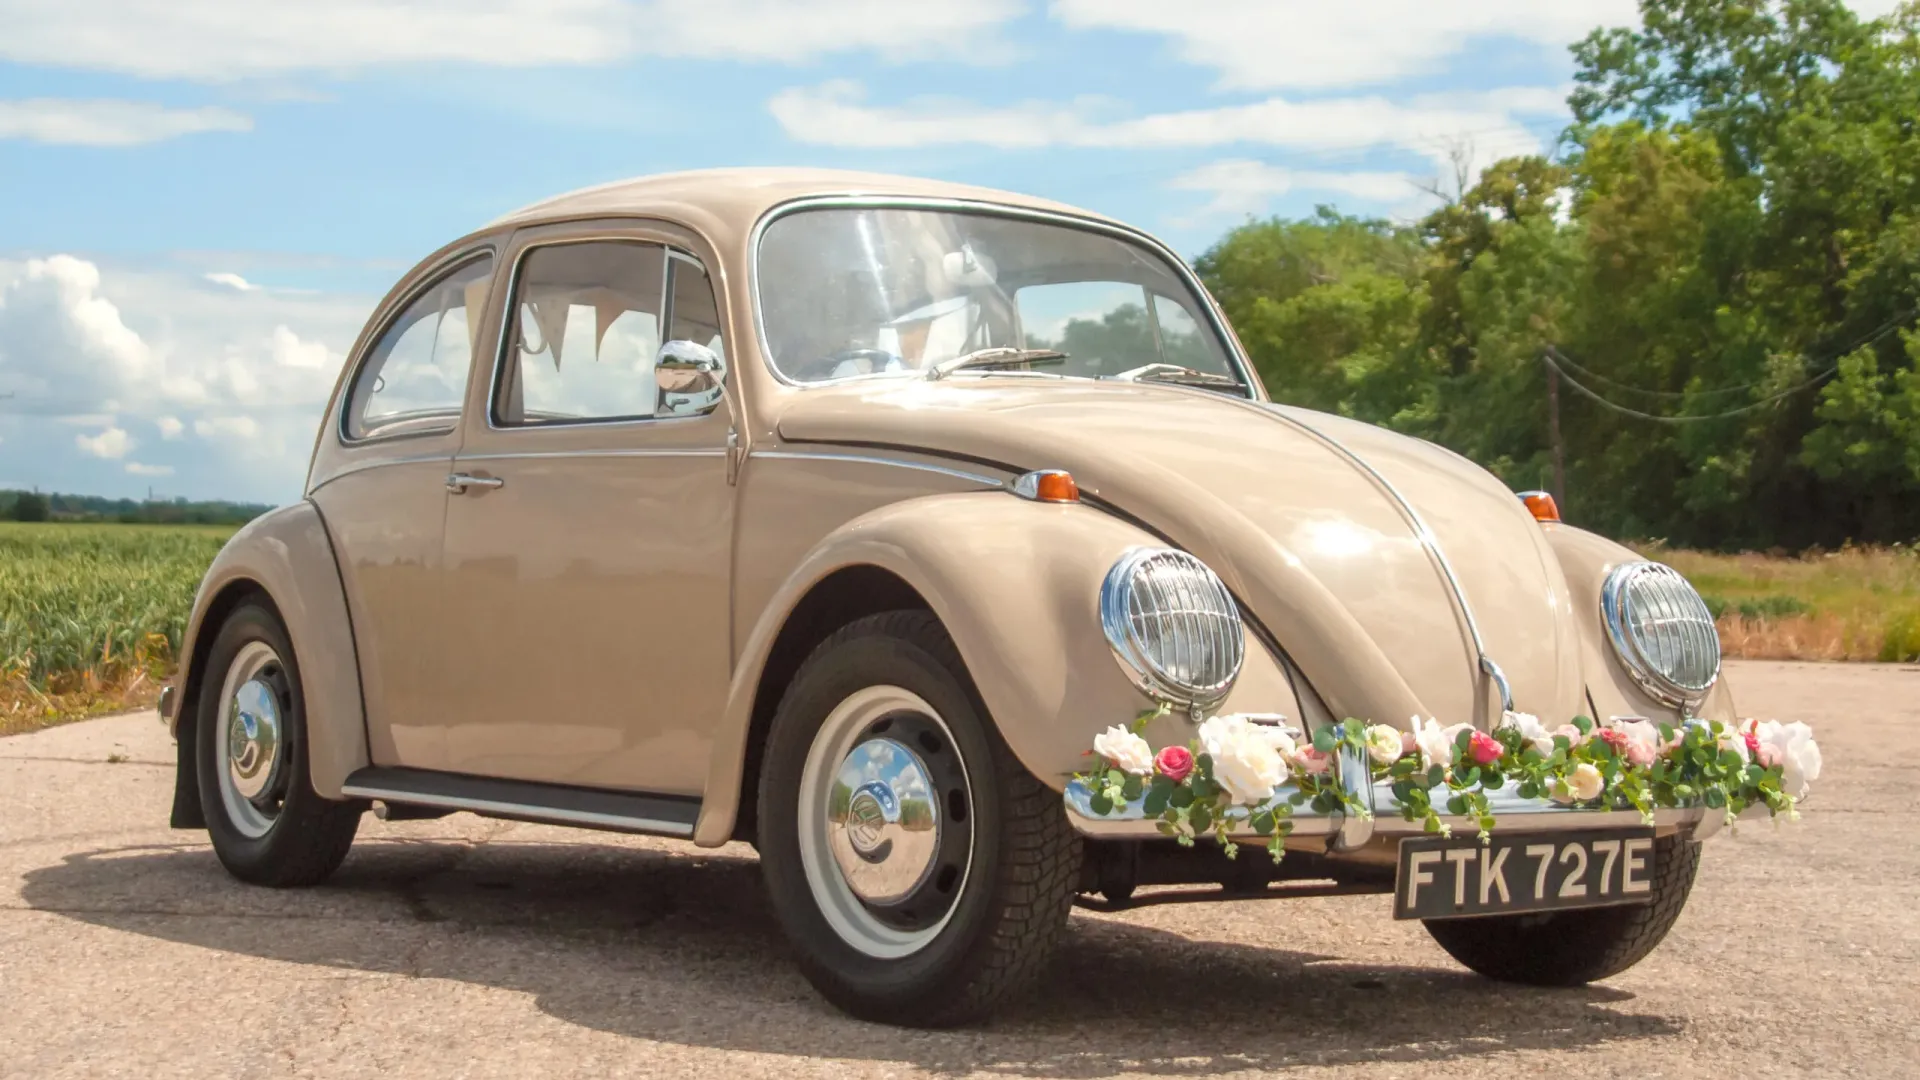 Side view of Volkswagen Beetle